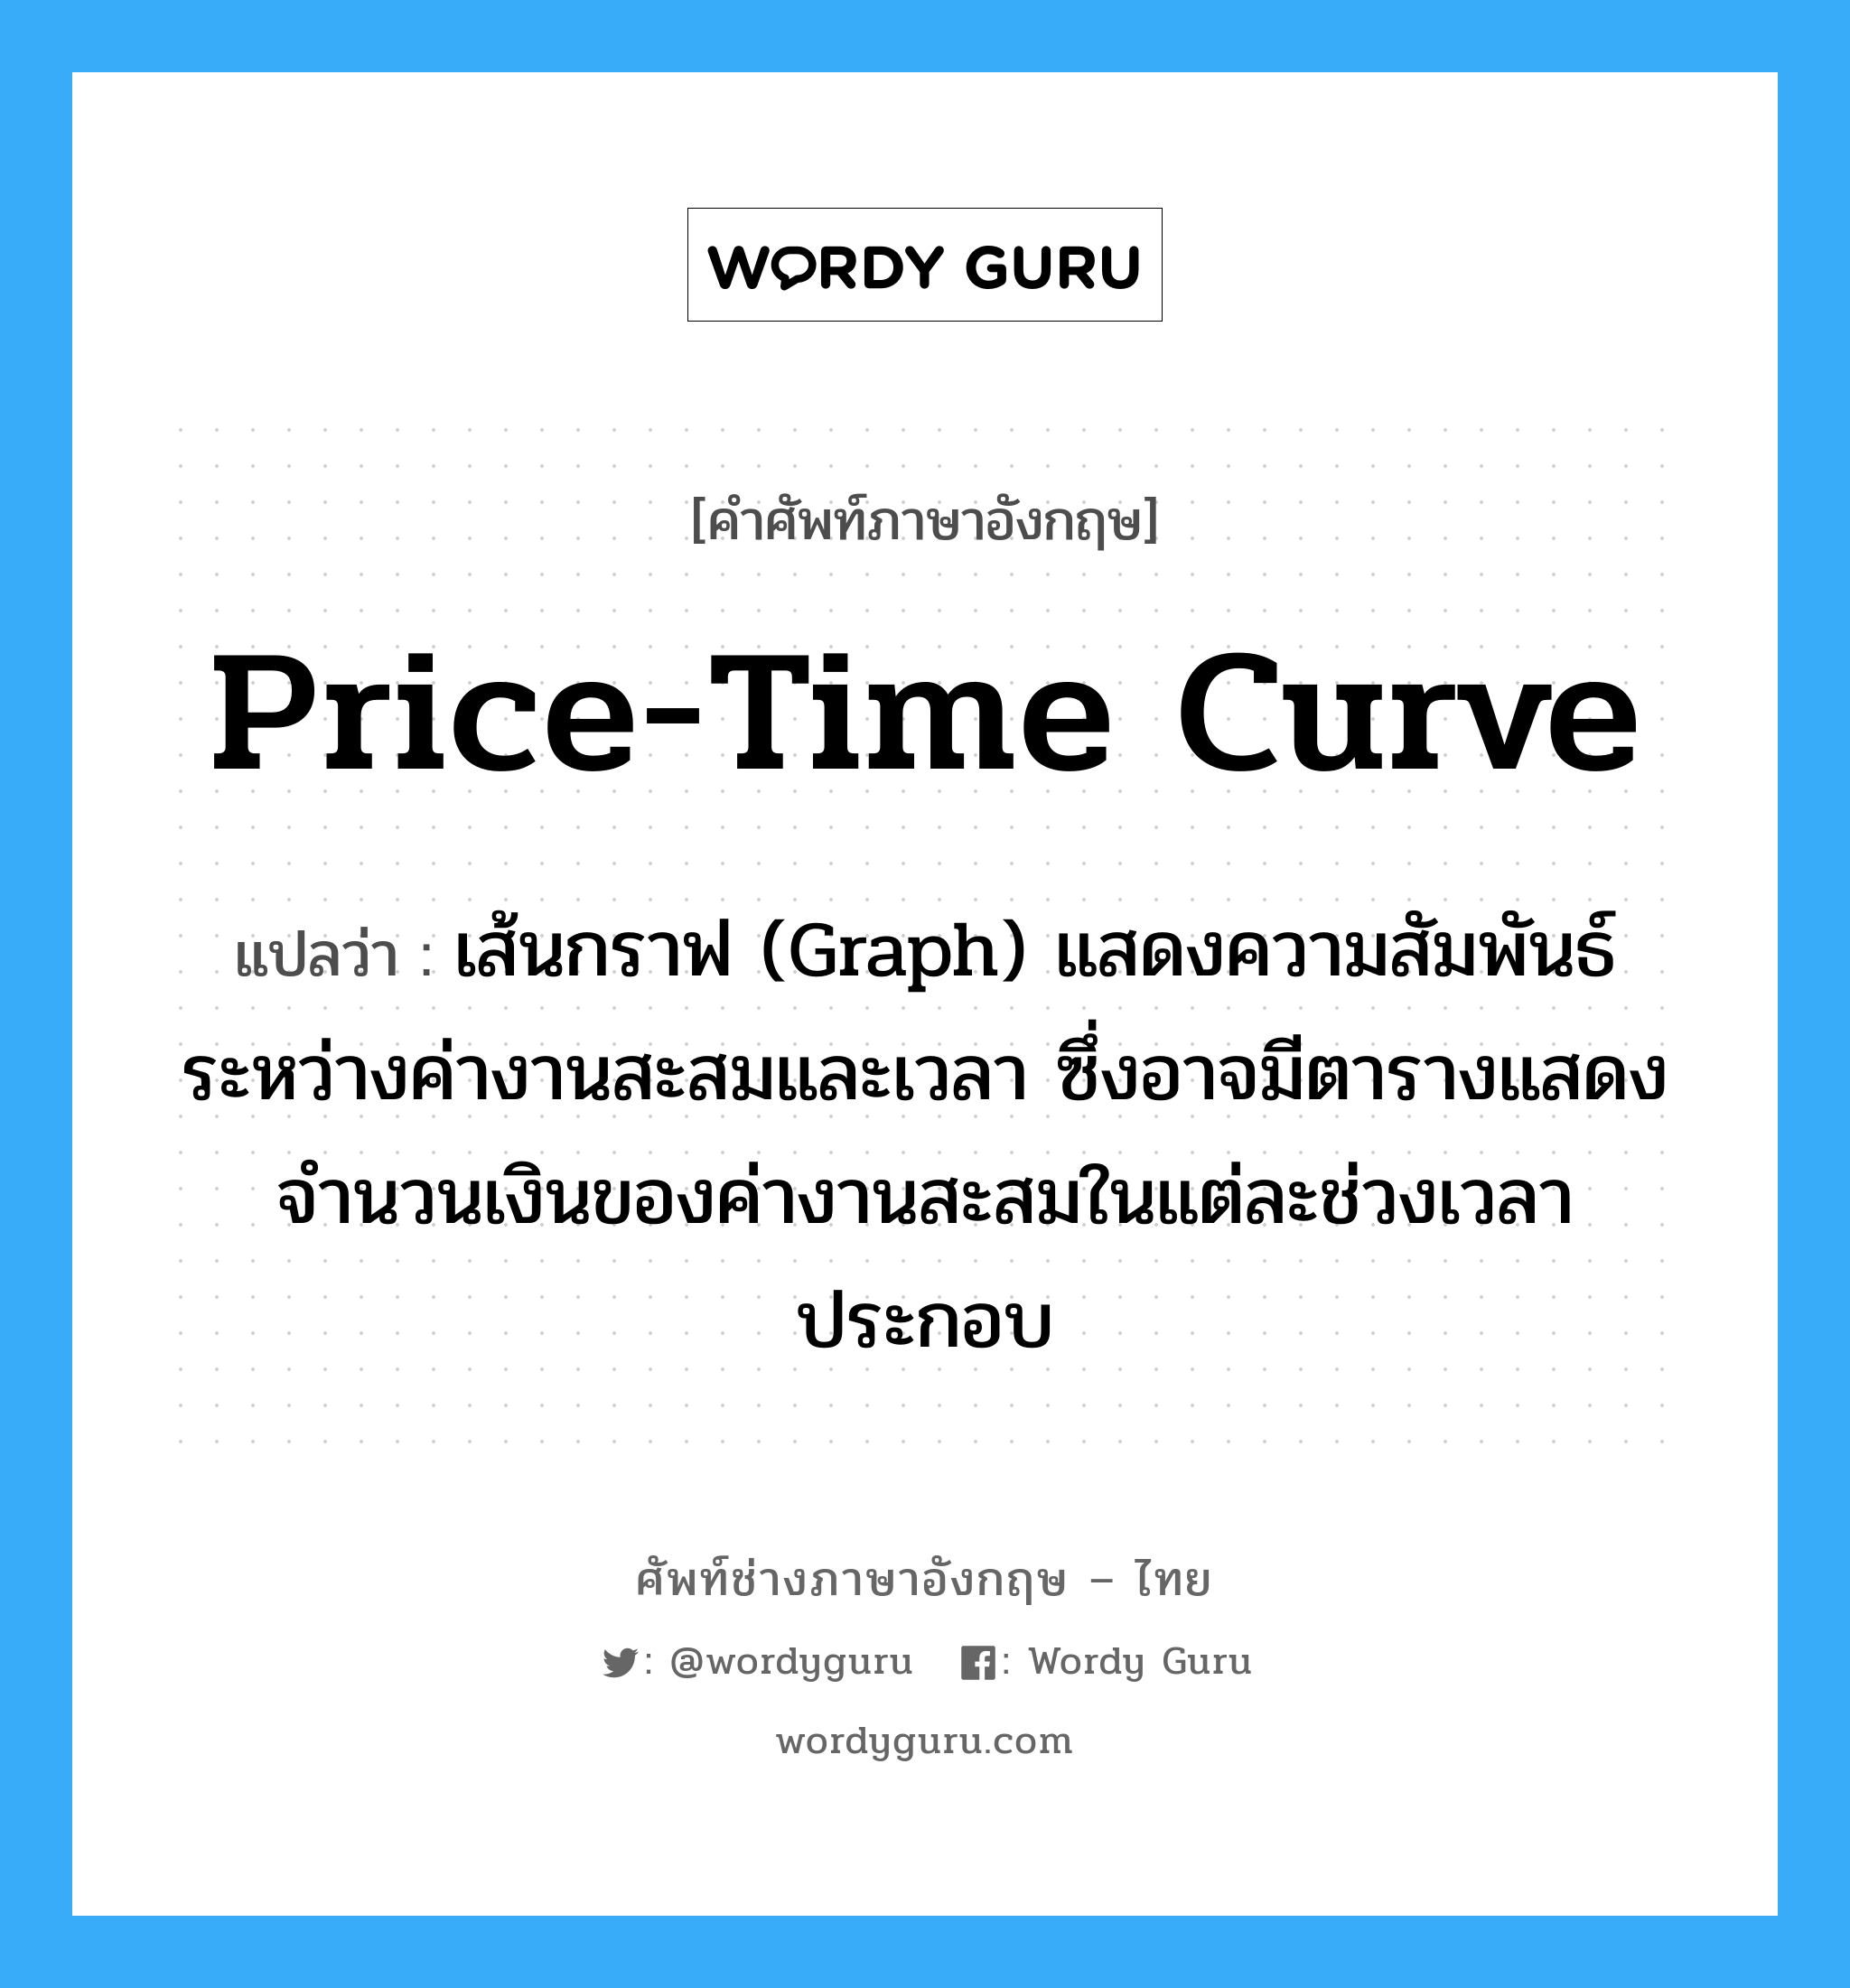 Price-Time Curve แปลว่า?, คำศัพท์ช่างภาษาอังกฤษ - ไทย Price-Time Curve คำศัพท์ภาษาอังกฤษ Price-Time Curve แปลว่า เส้นกราฟ (Graph) แสดงความสัมพันธ์ระหว่างค่างานสะสมและเวลา ซึ่งอาจมีตารางแสดงจำนวนเงินของค่างานสะสมในแต่ละช่วงเวลาประกอบ